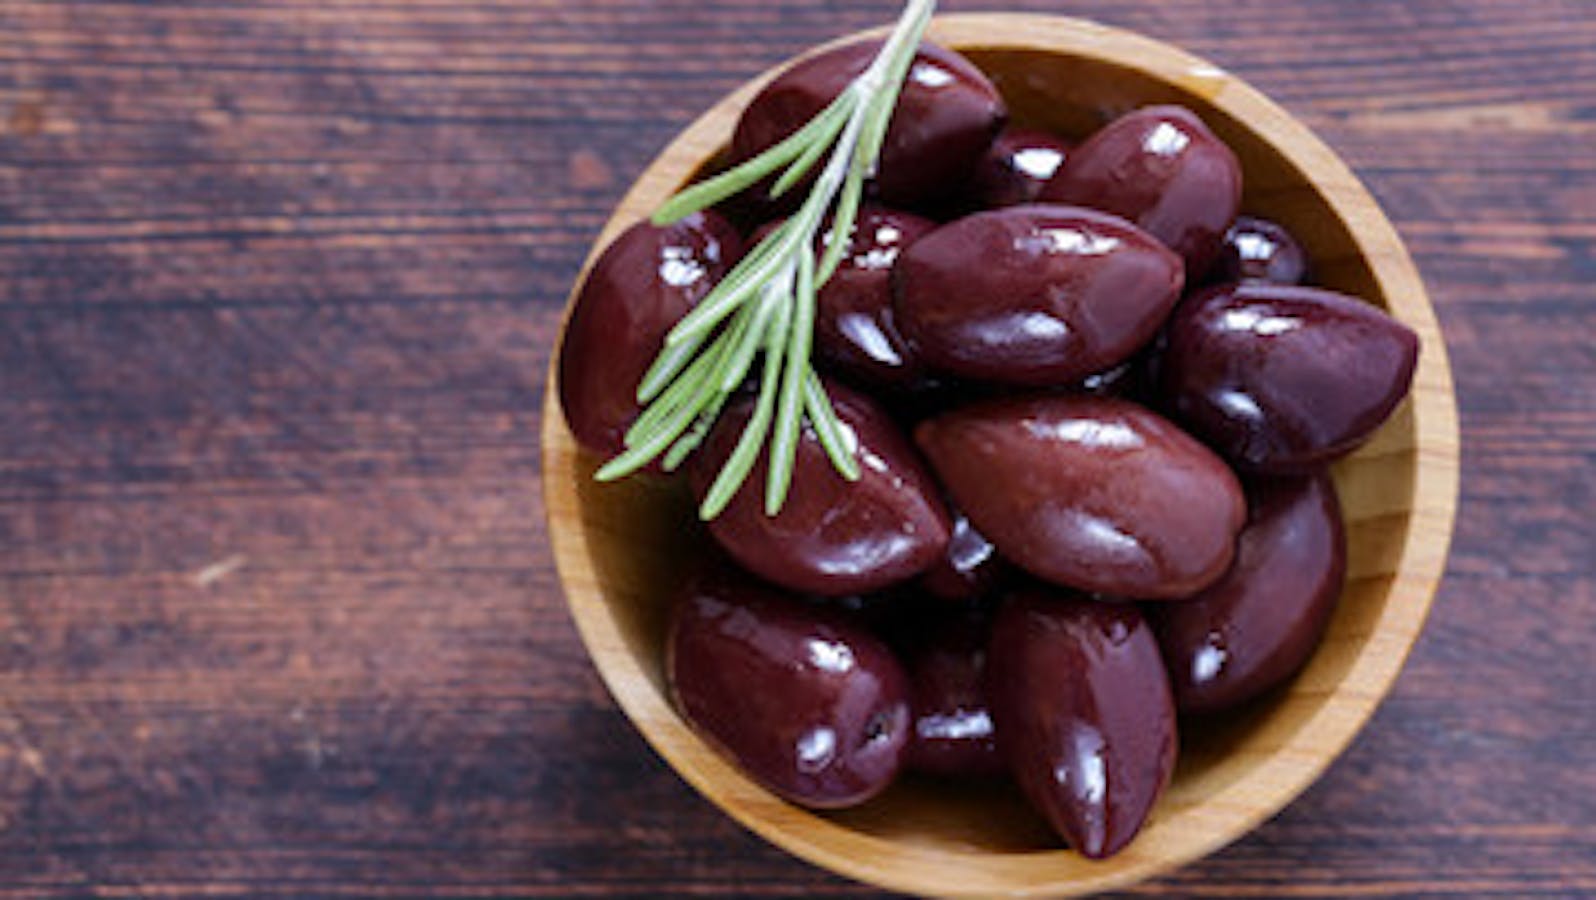 Kalamata olives : Facts and Benefits